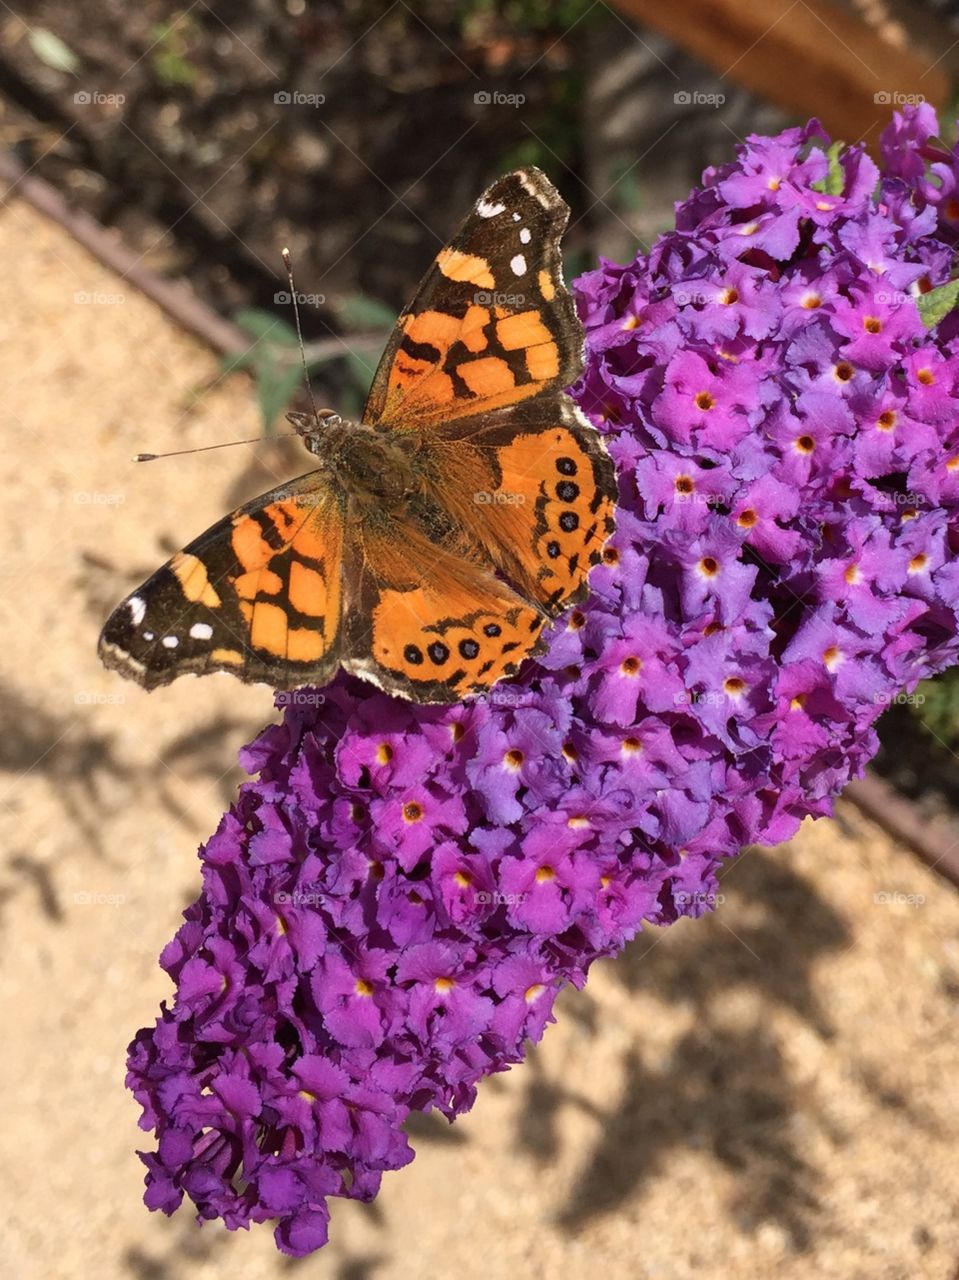 Butterfly on Buddleja 